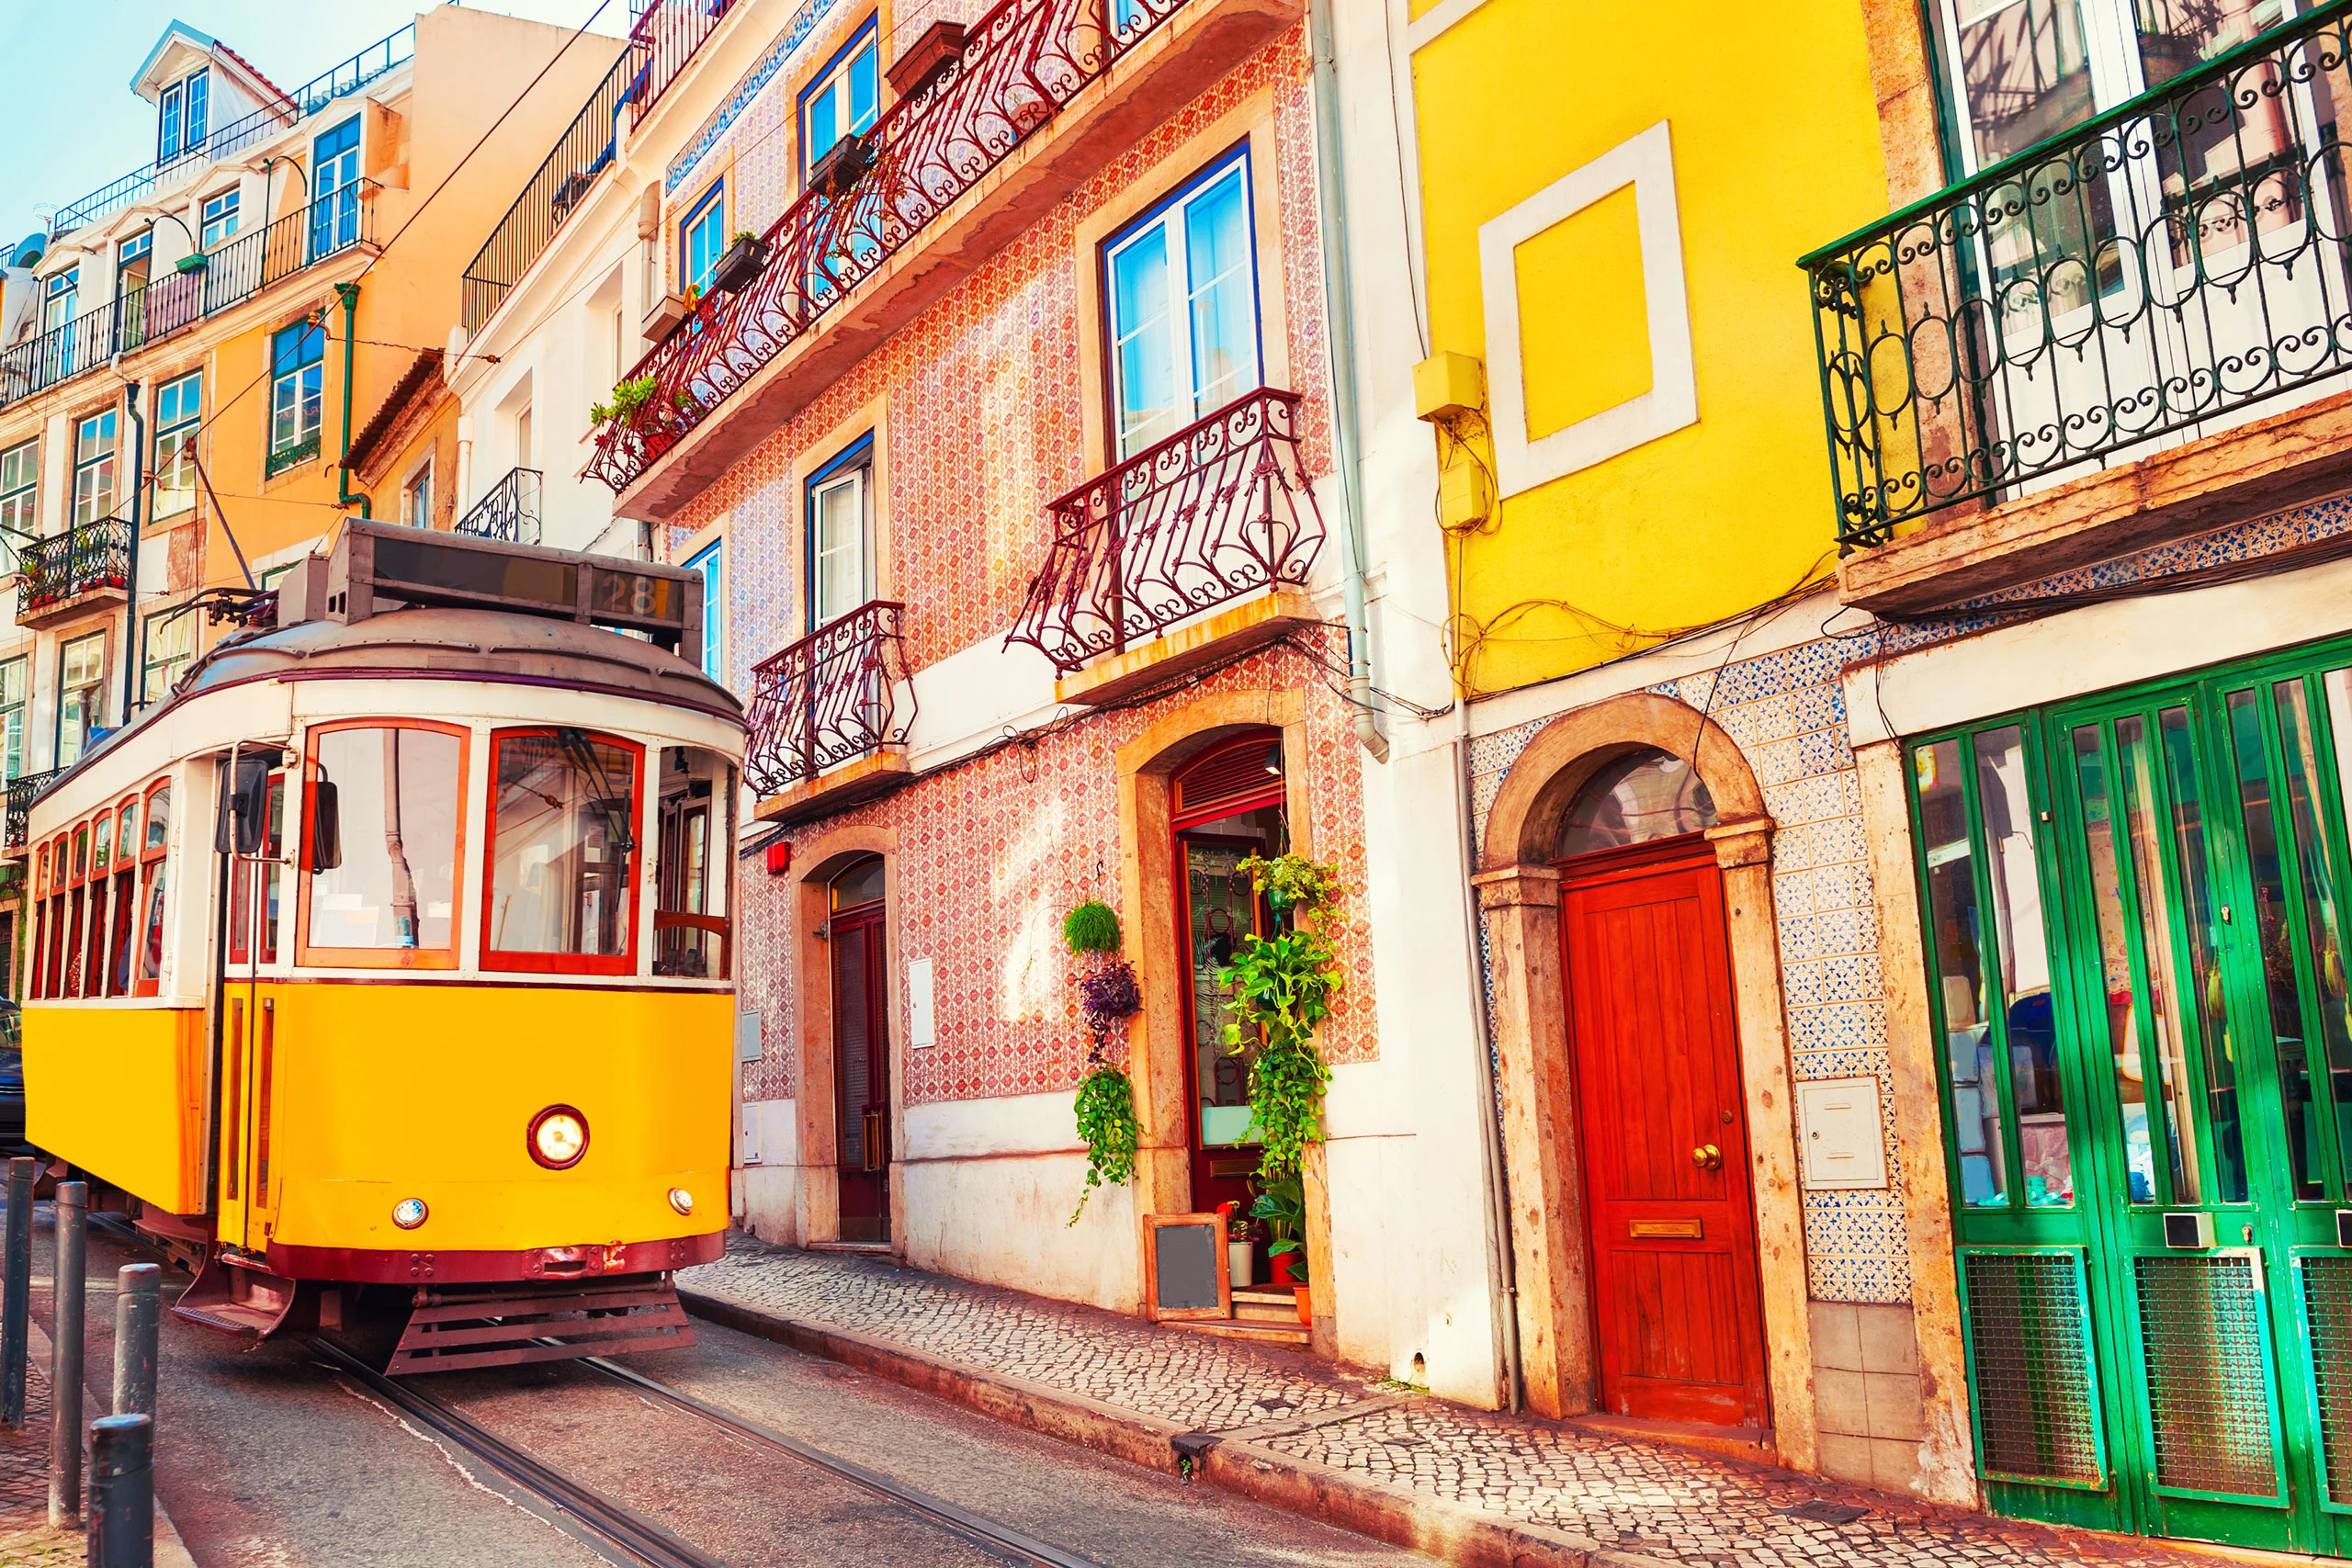 Hotéis em Lisboa 4 estrelas: As 8 Melhores opções